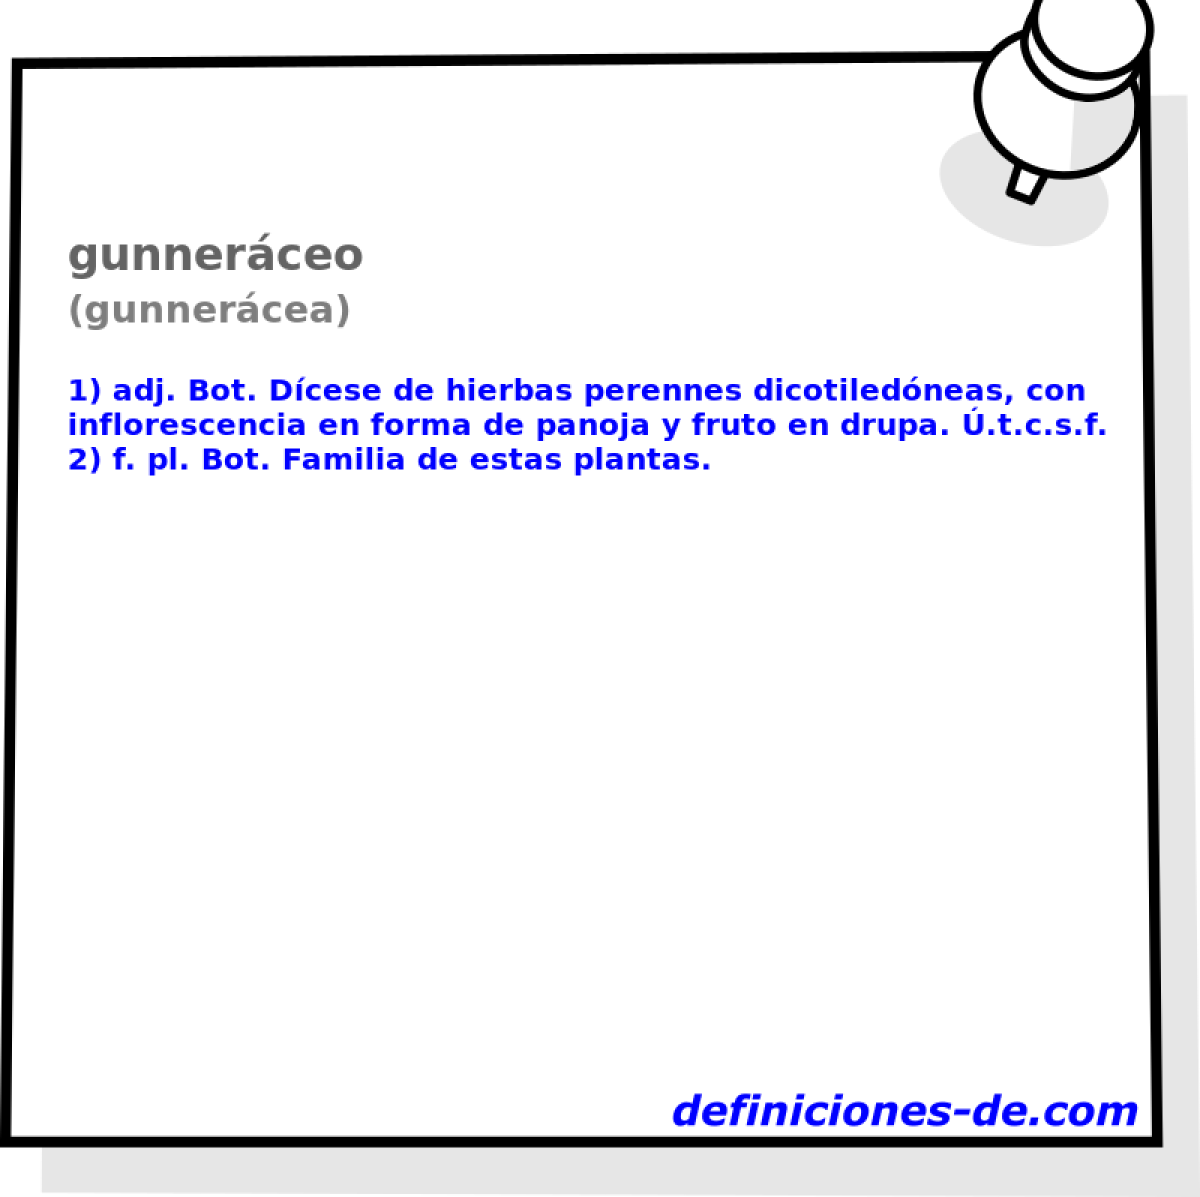 gunnerceo (gunnercea)